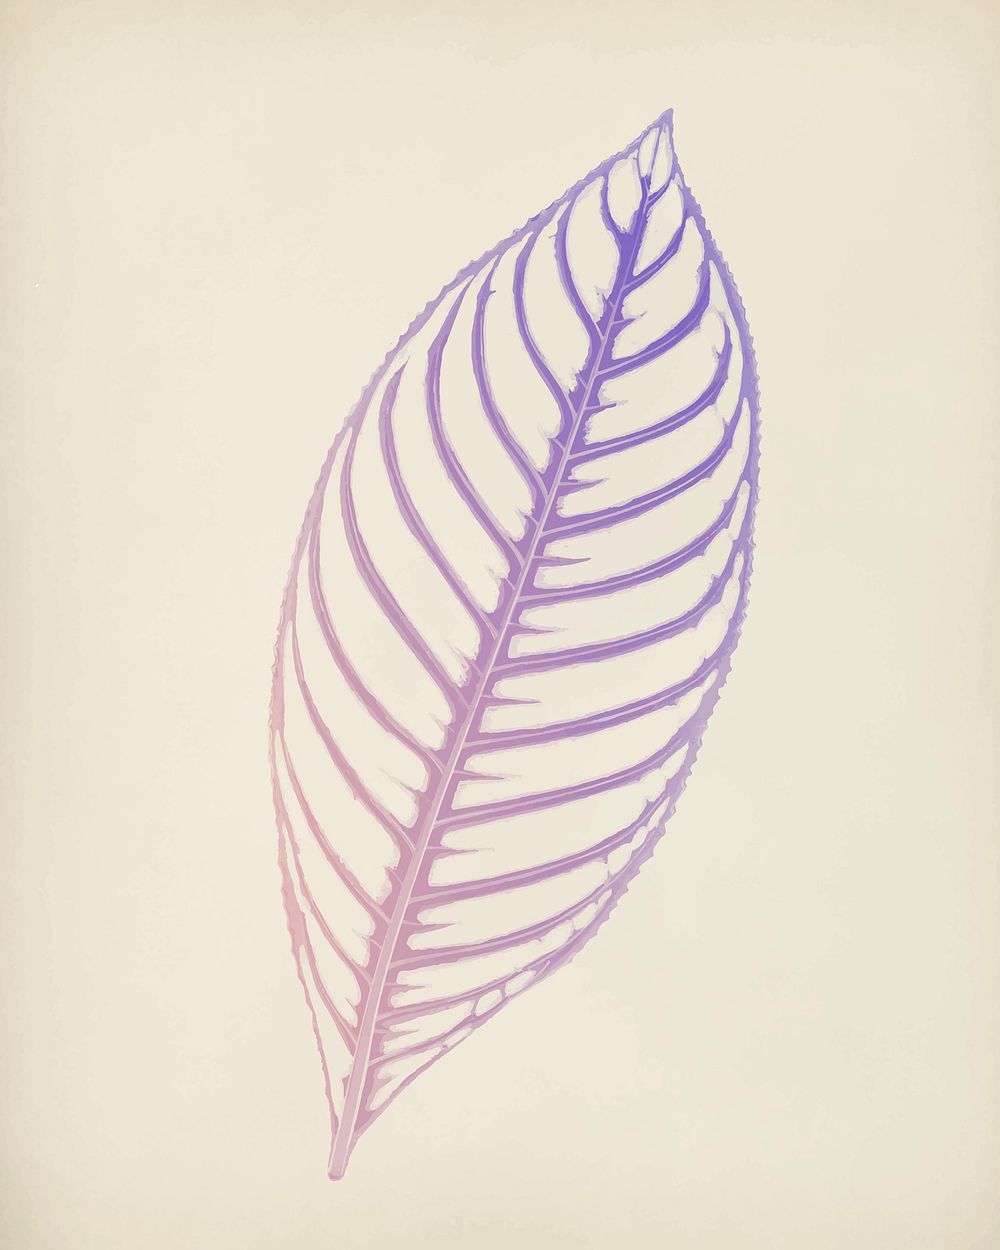 Sanchezia Nobilis, engraved Tiger Plant leaf vintage illustration vector, remix from original artwork of Benjamin Fawcett.